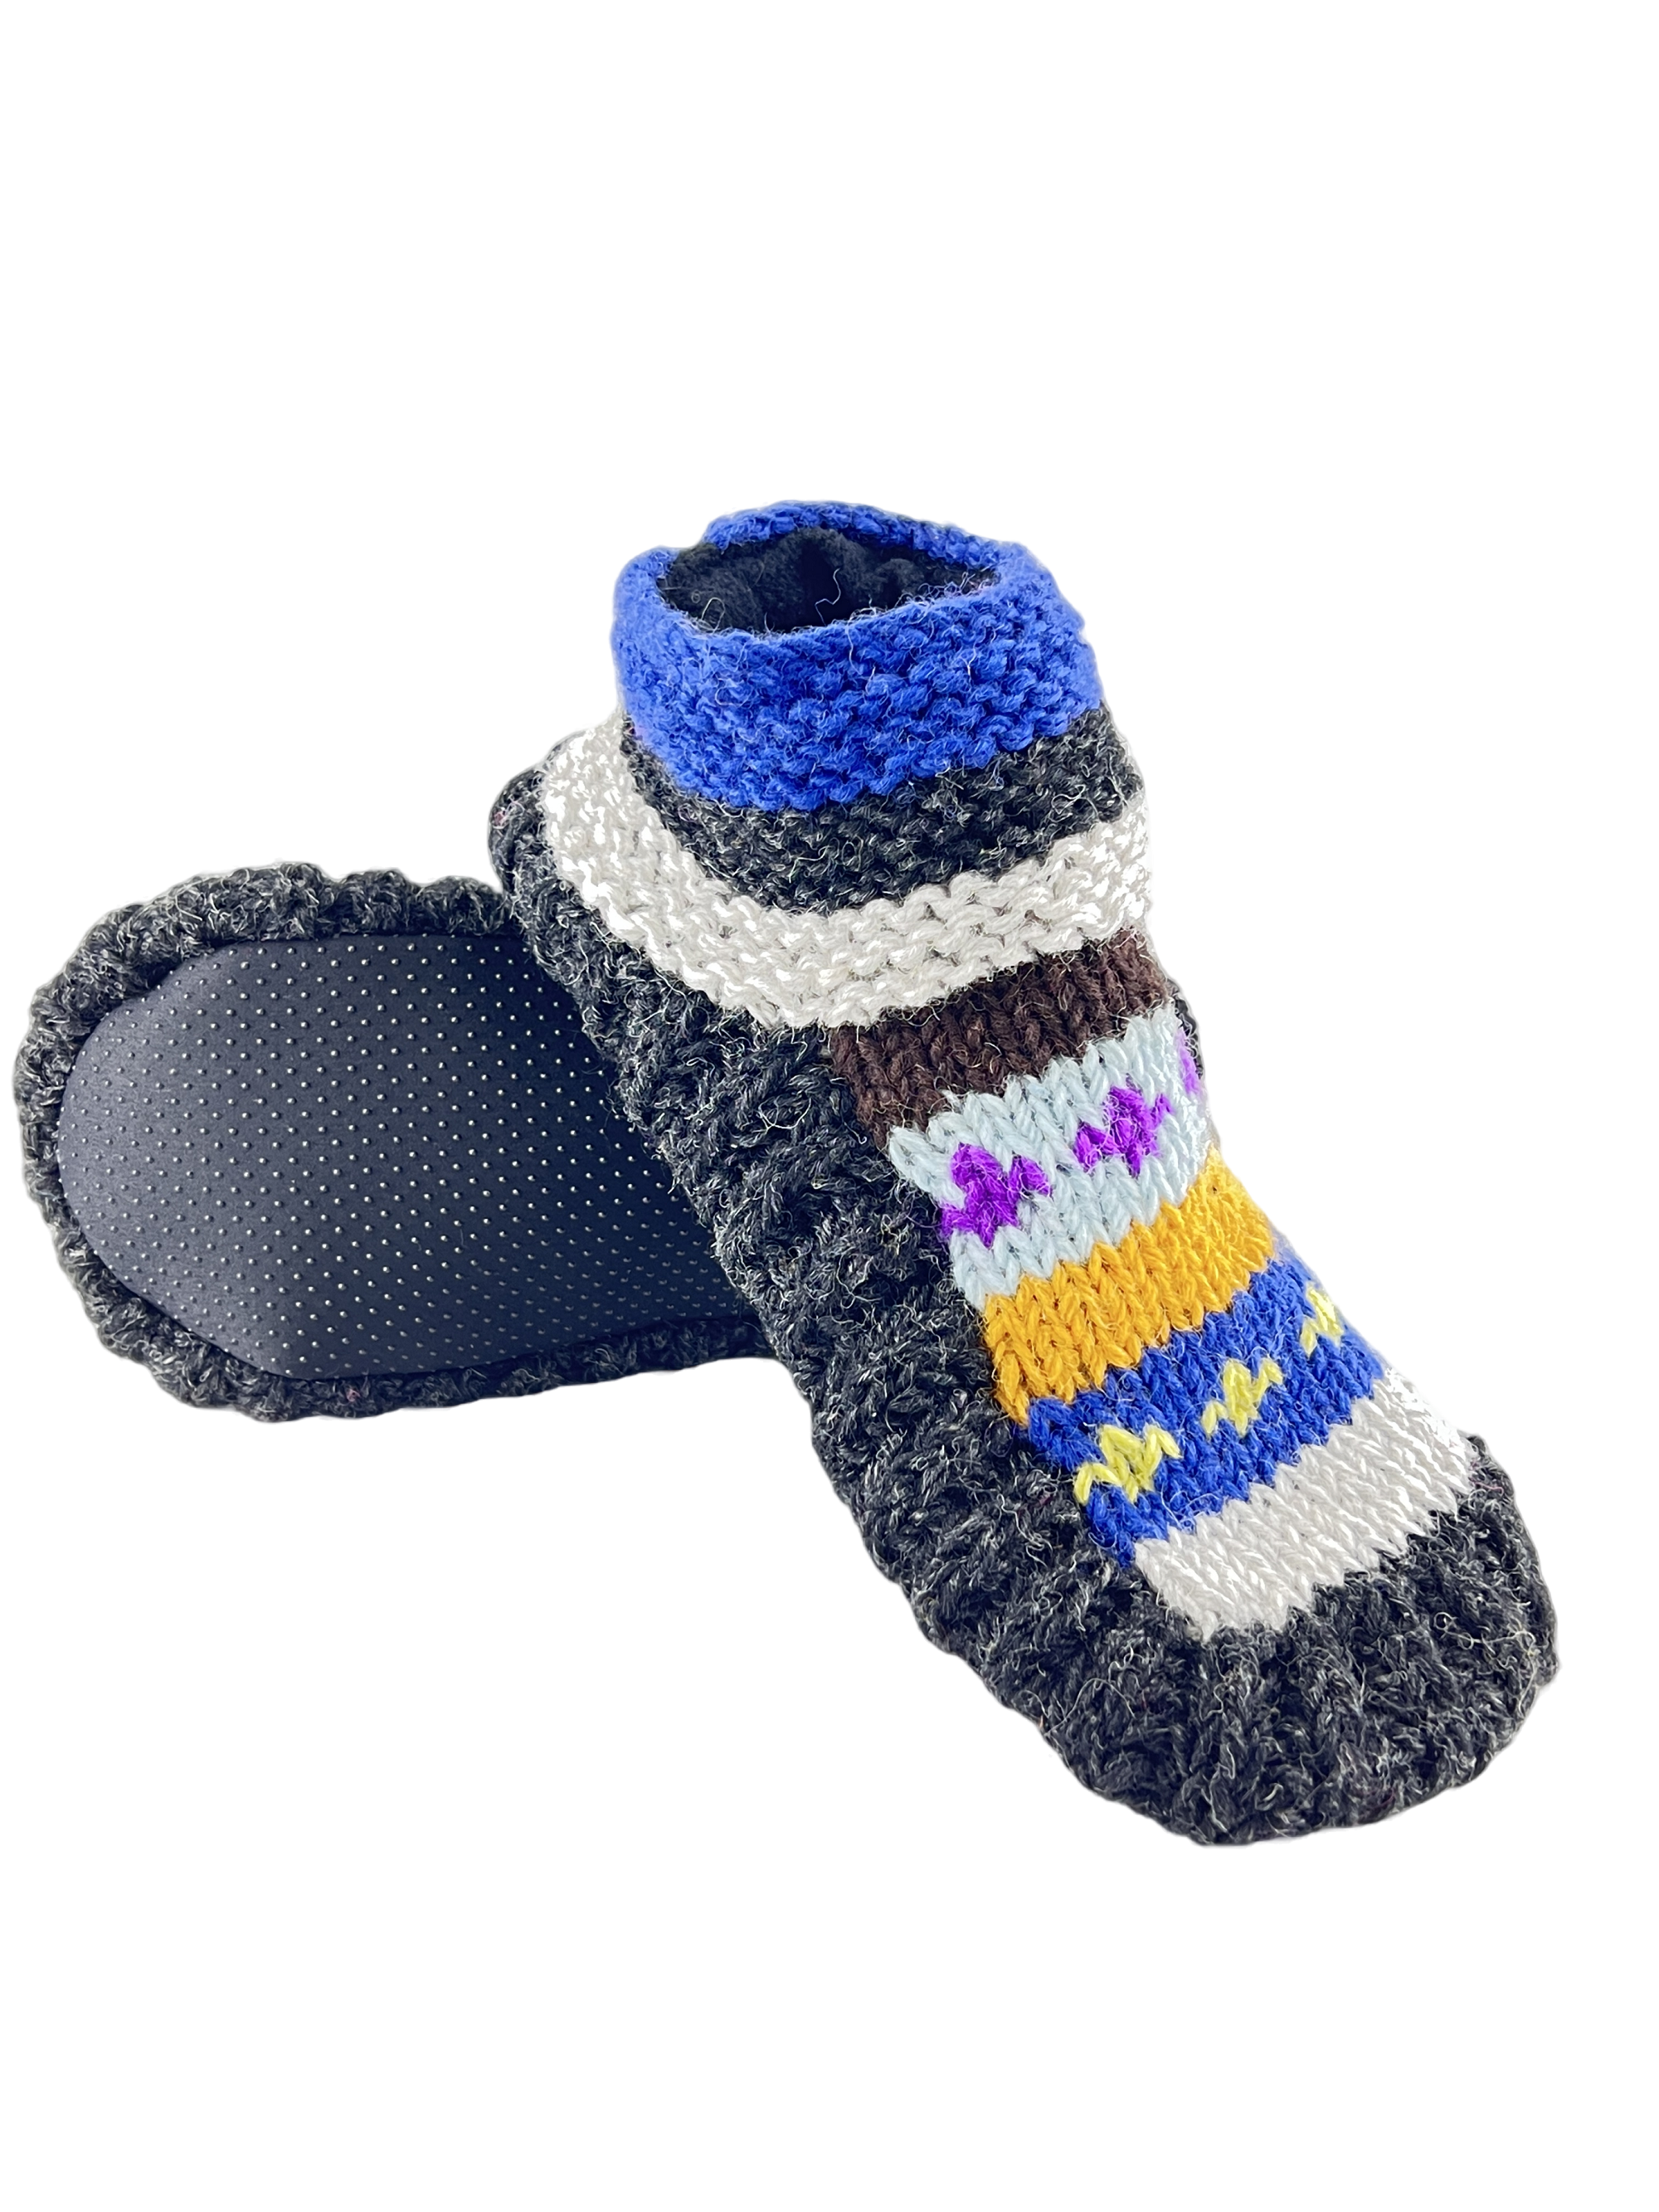 Non-slip socks for elderly| Handknitted socks | Warm slippers for Winters for Men & Women | Hospital socks